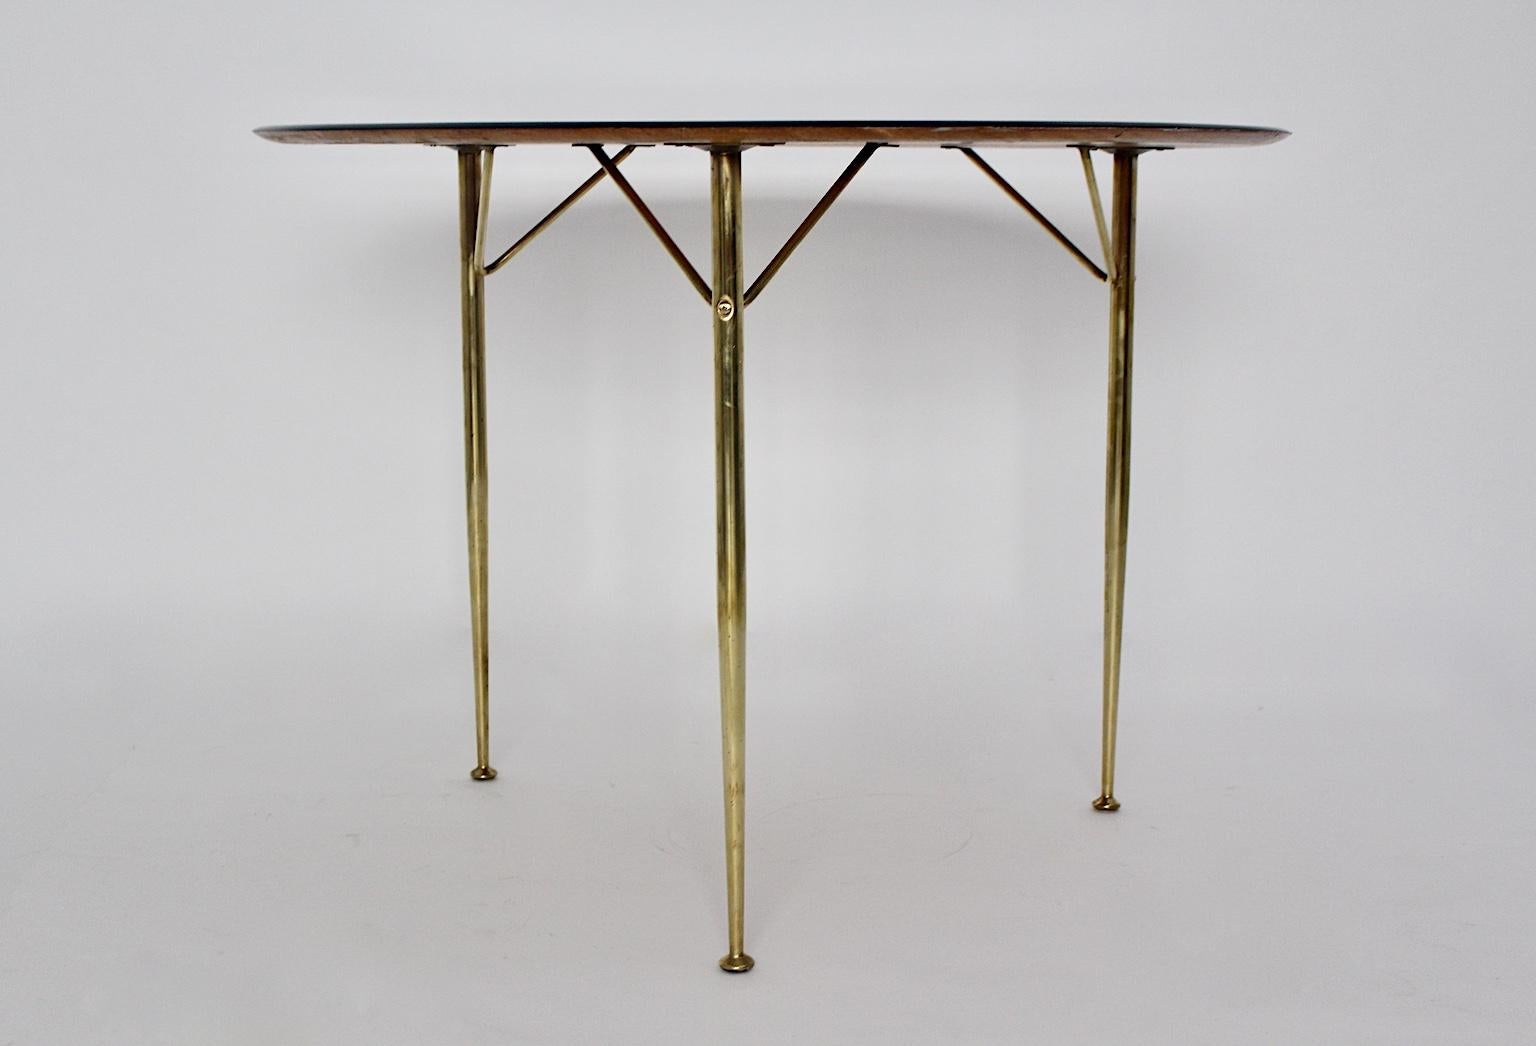 Scandinavian Modern Vintage Dining Table Arne Jacobsen for Fritz Hansen 1950s For Sale 2